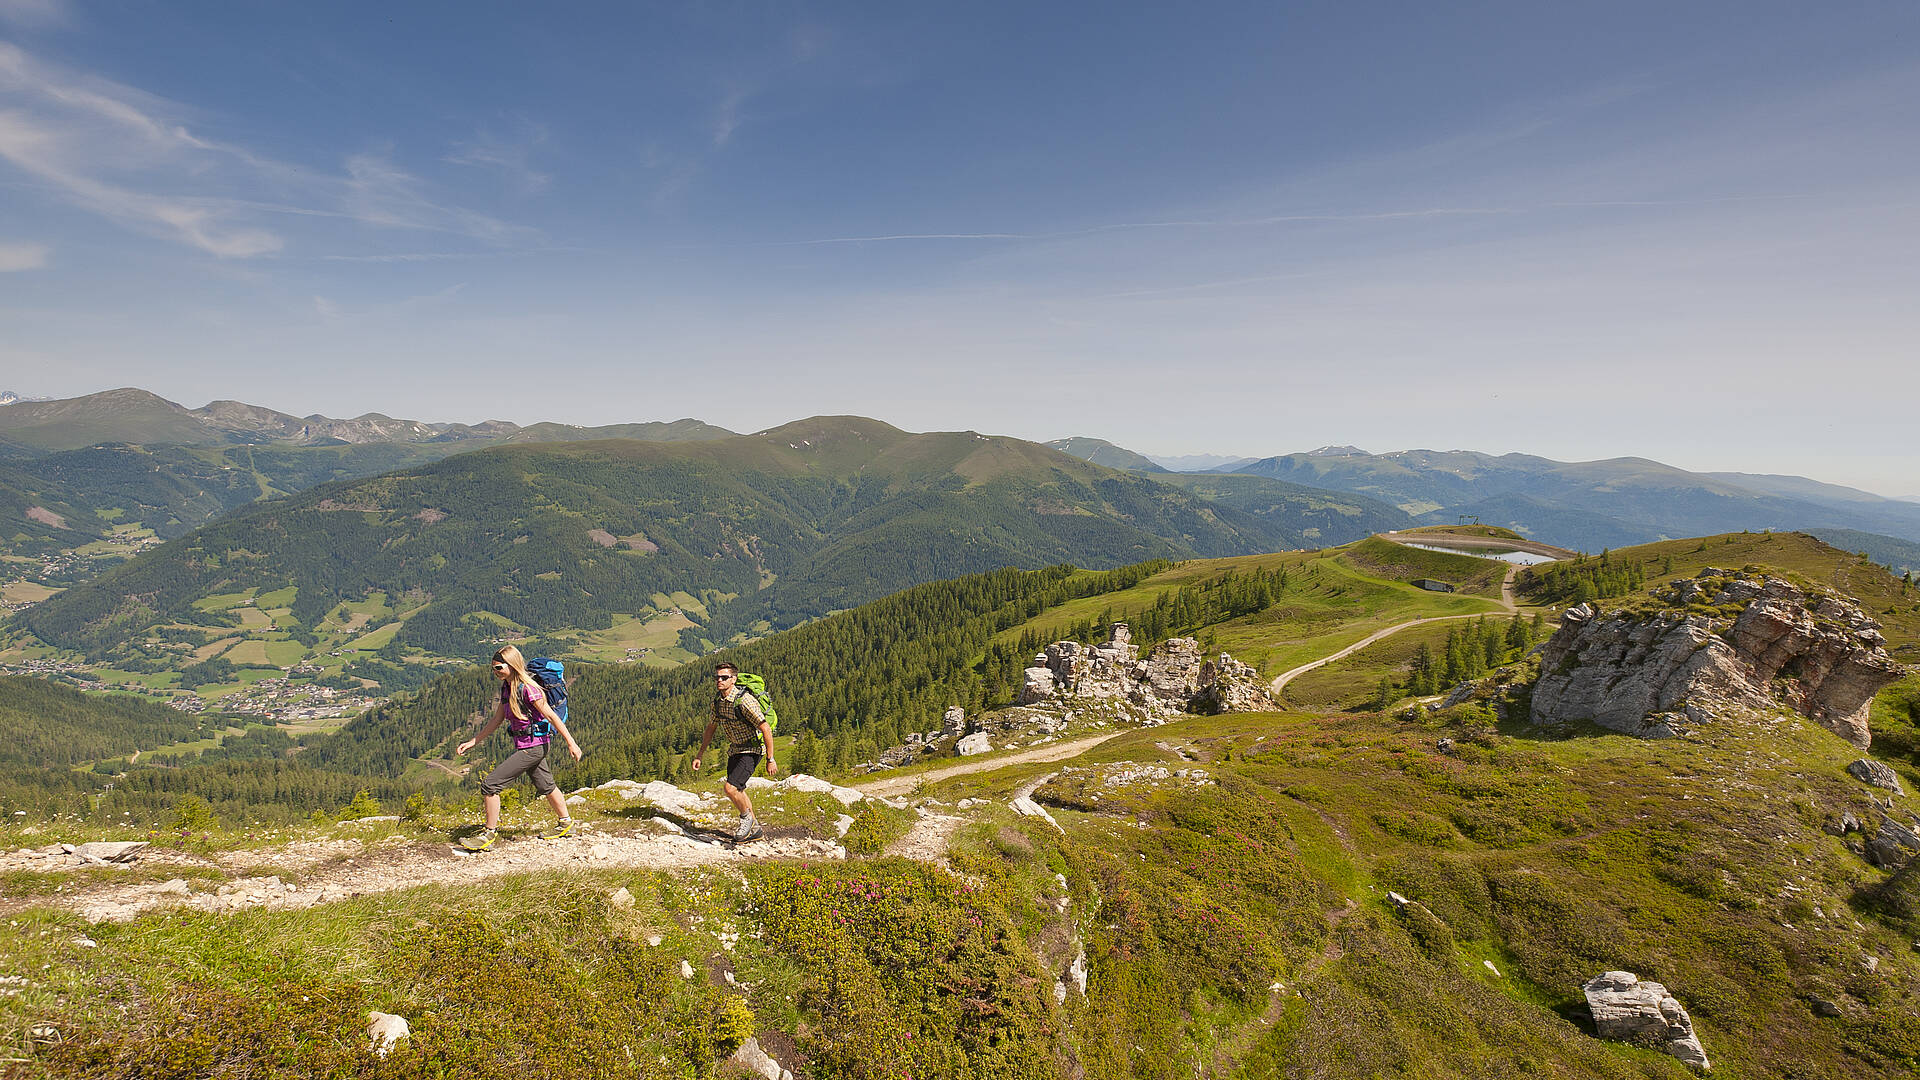 Pärchen bei Wanderung am Alpe Adria Trail in den Nockbergen